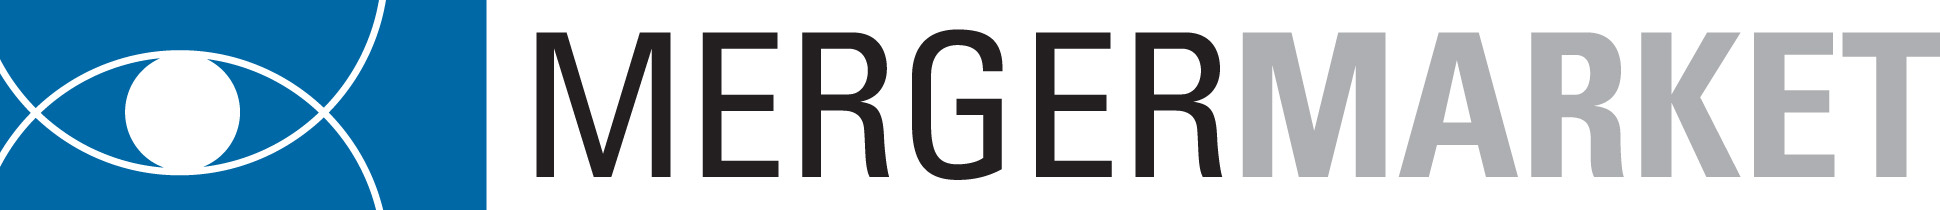 MergerMarket Logo